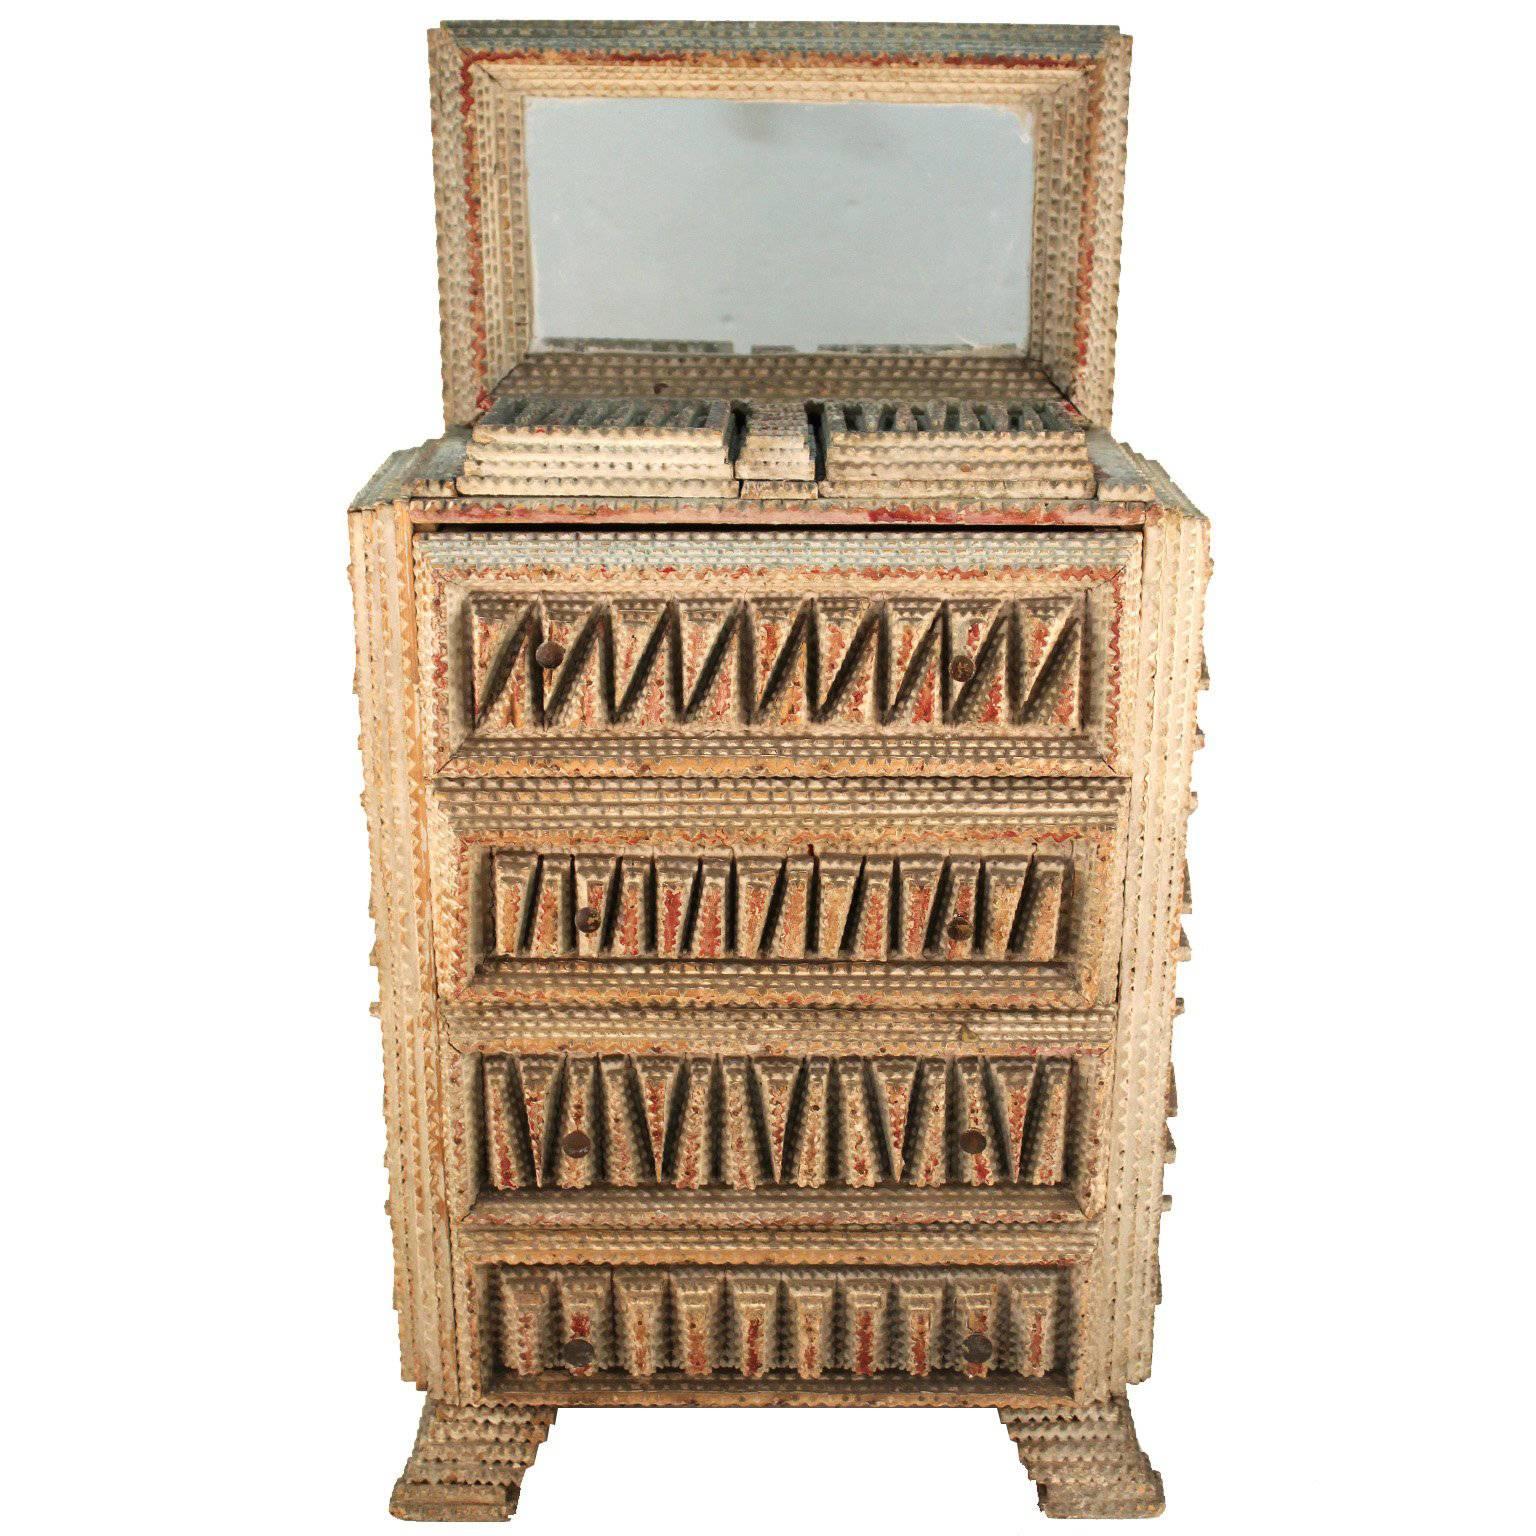 American Folk Art Tramp Art Miniature Wooden Dresser